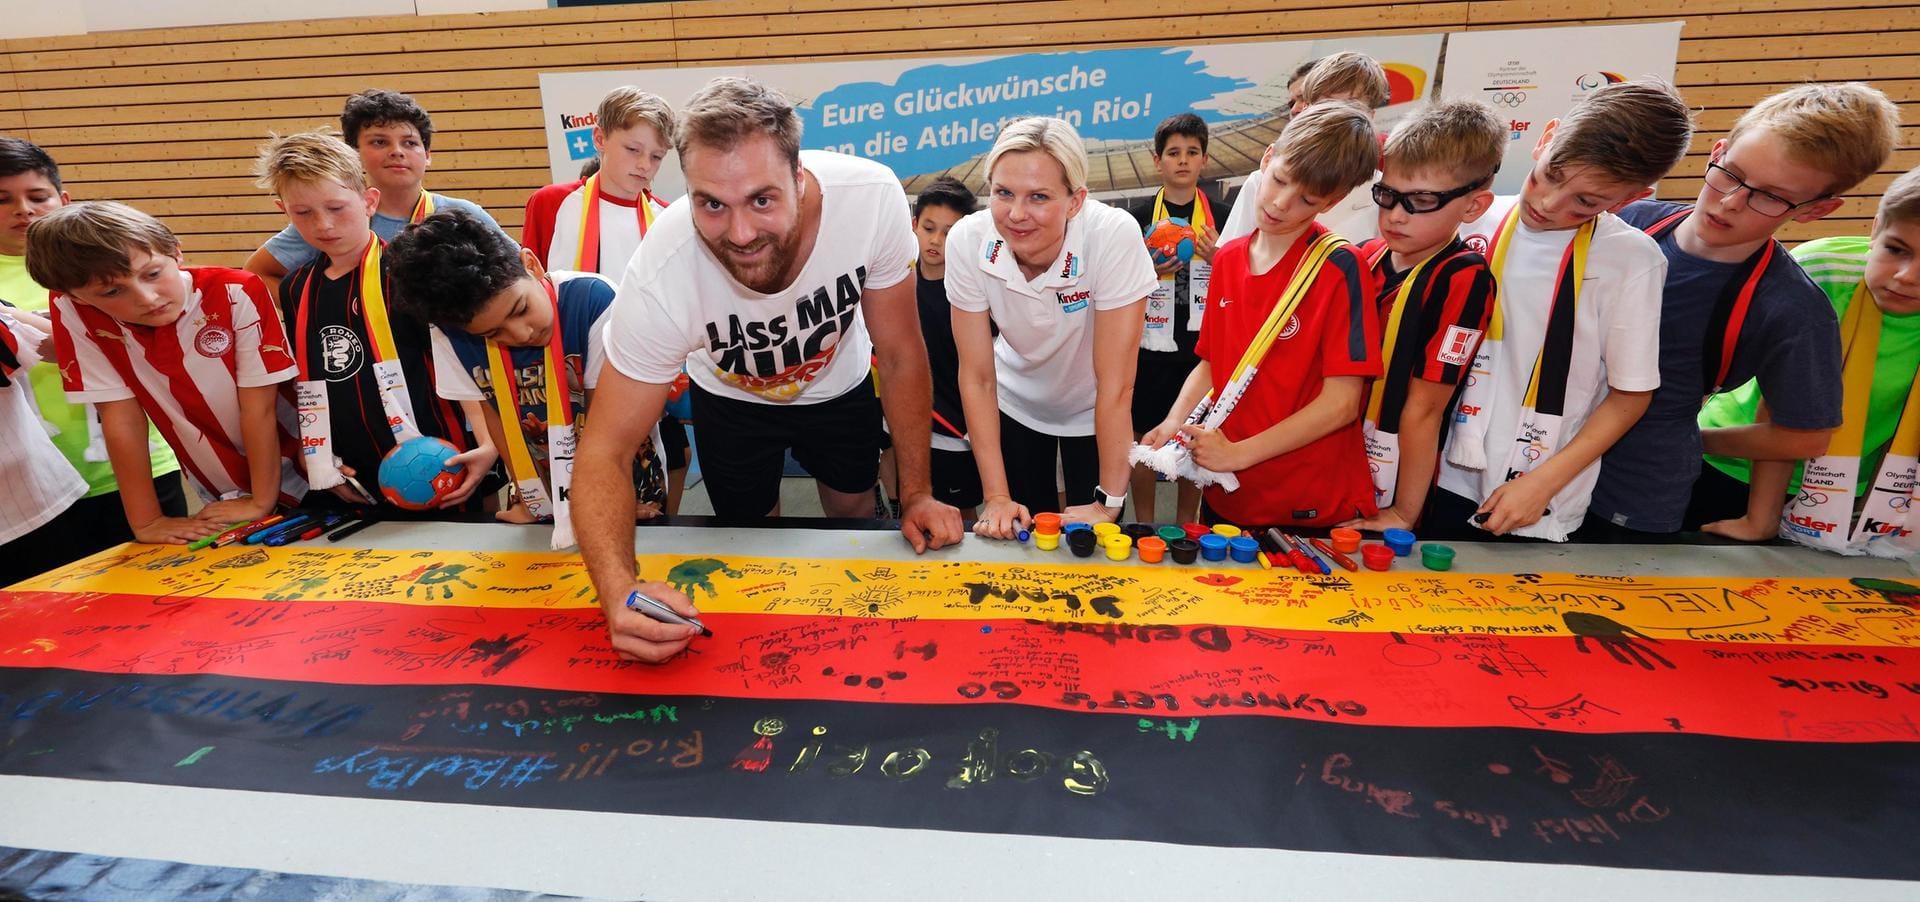 Bei dem Sport-Event setzten die Kinder ihre Unterschriften auf den riesigen Fan-Schal von "kinder+Sport" für die deutsche Olympia-Mannschaft.